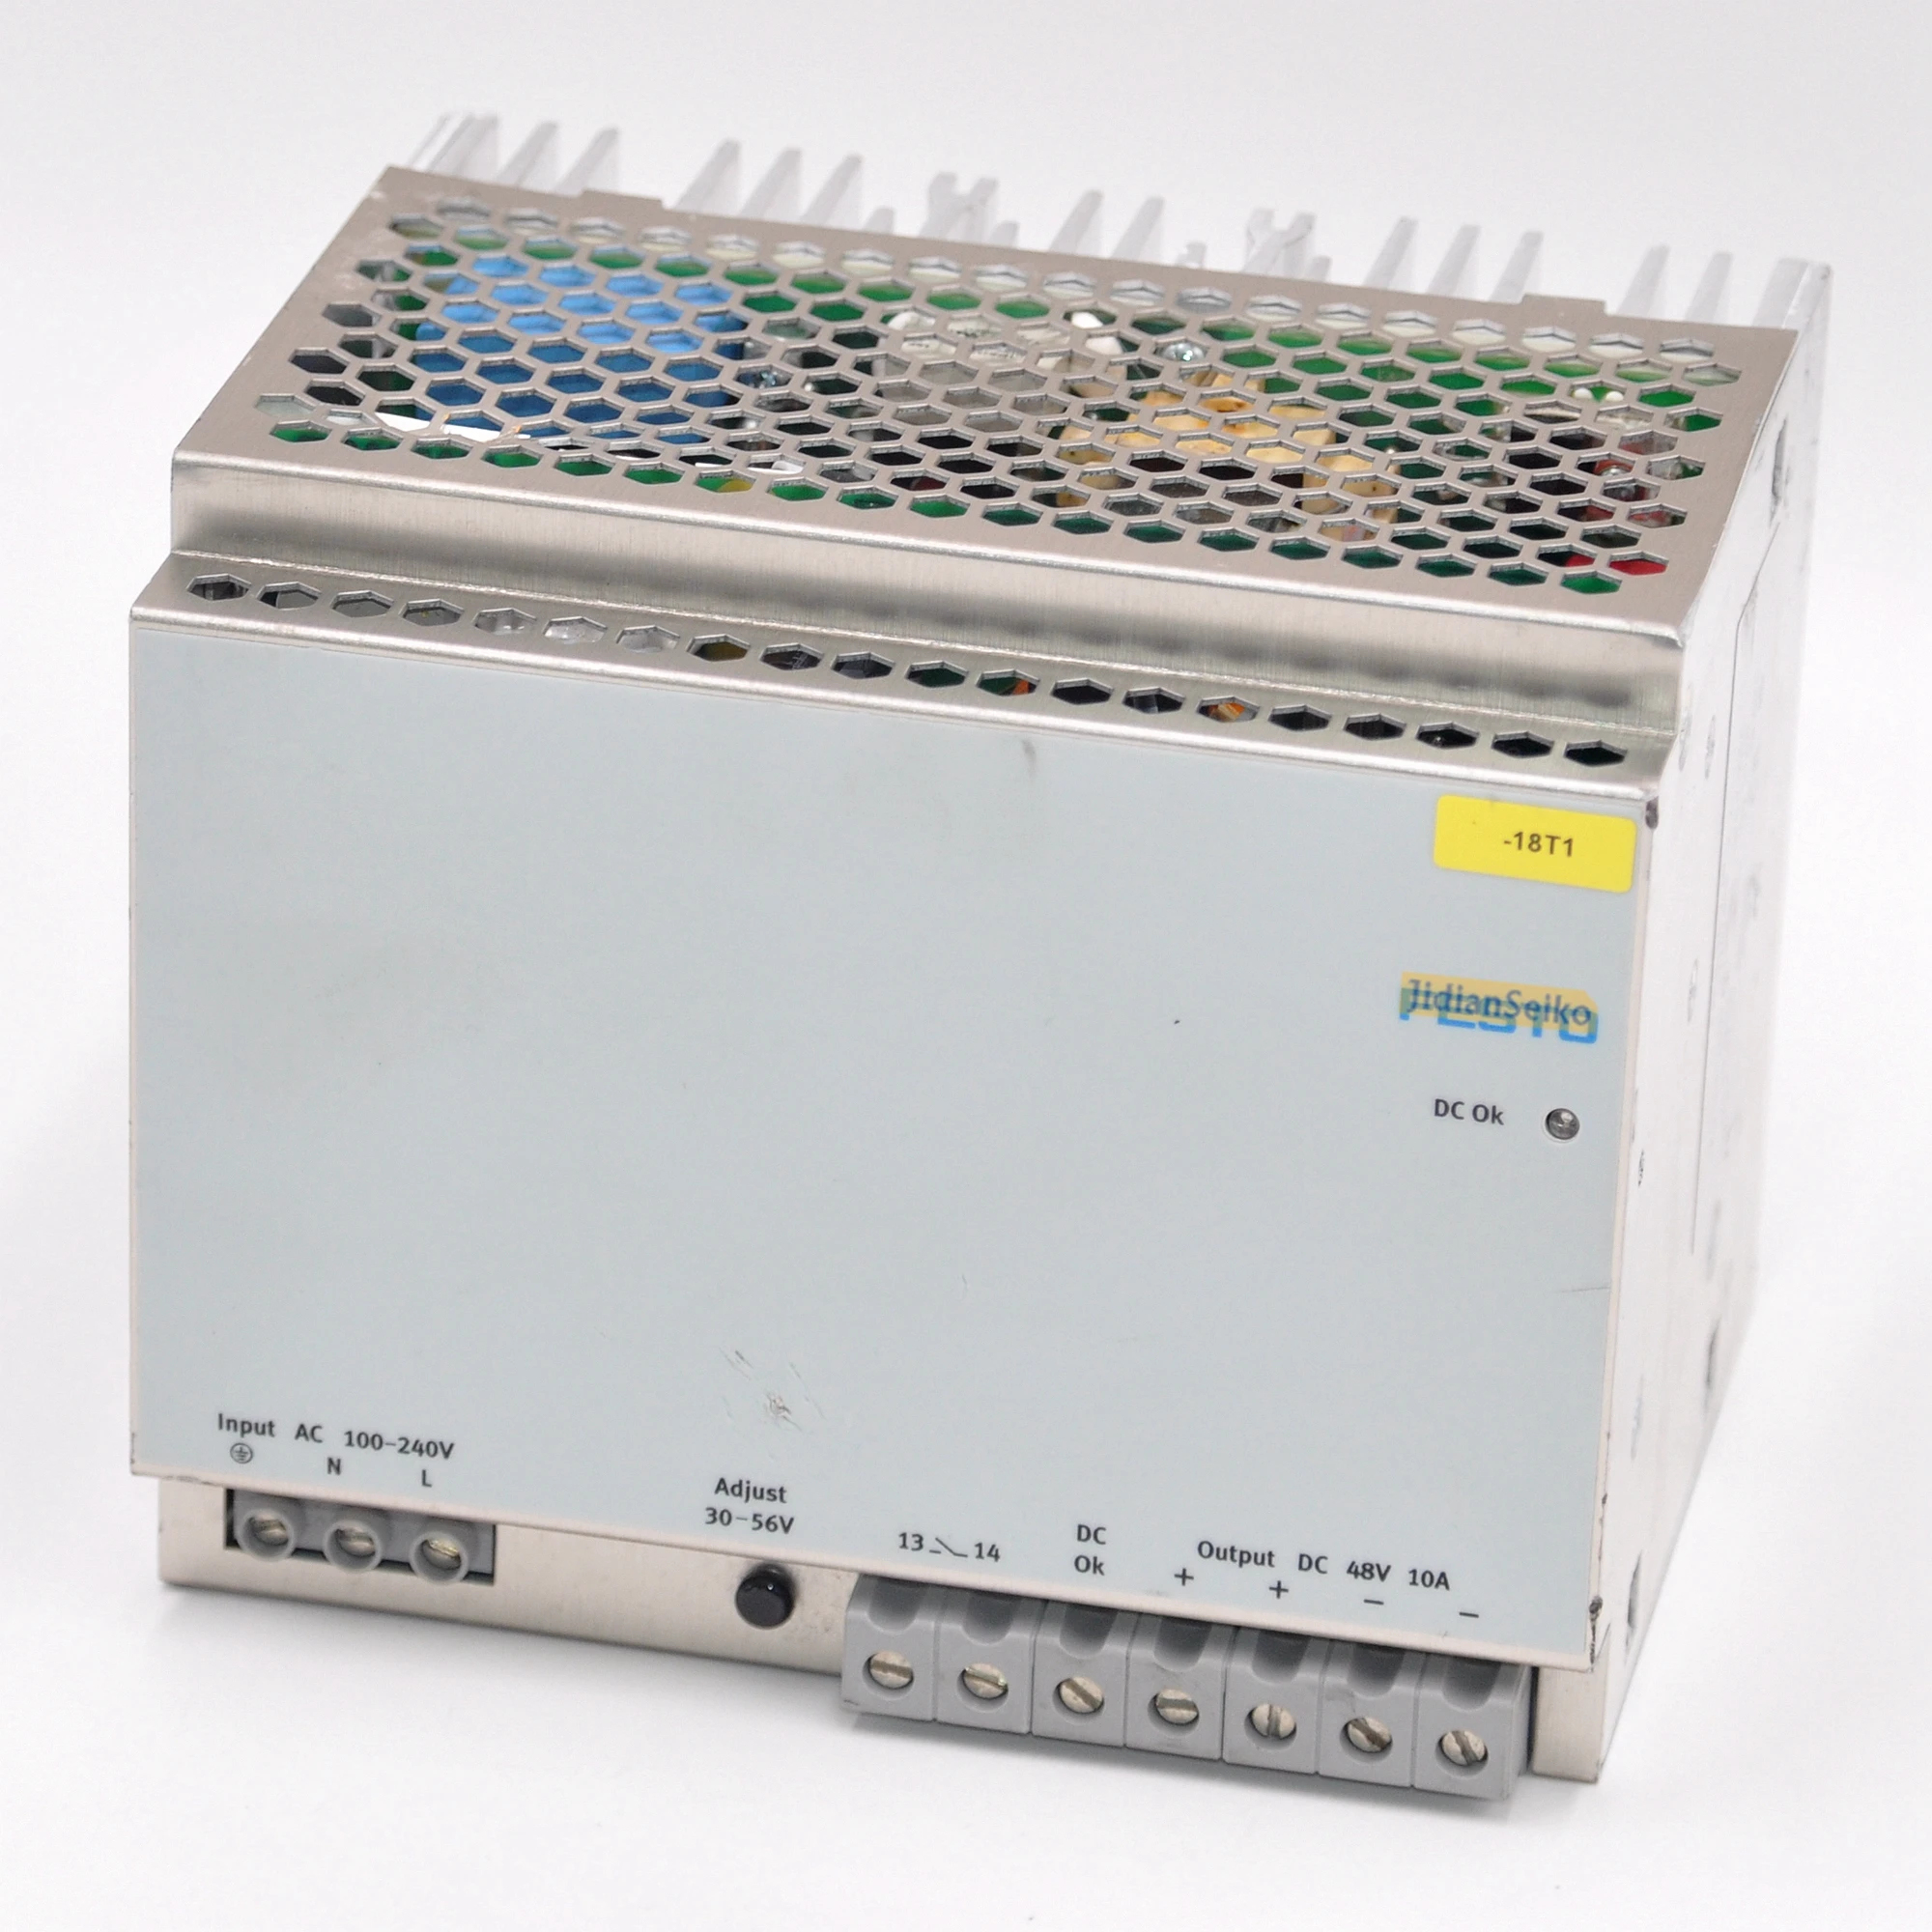 Power Supply CACN-3A-7-10 Input AC 100-240V Ouput DC 48V 10A